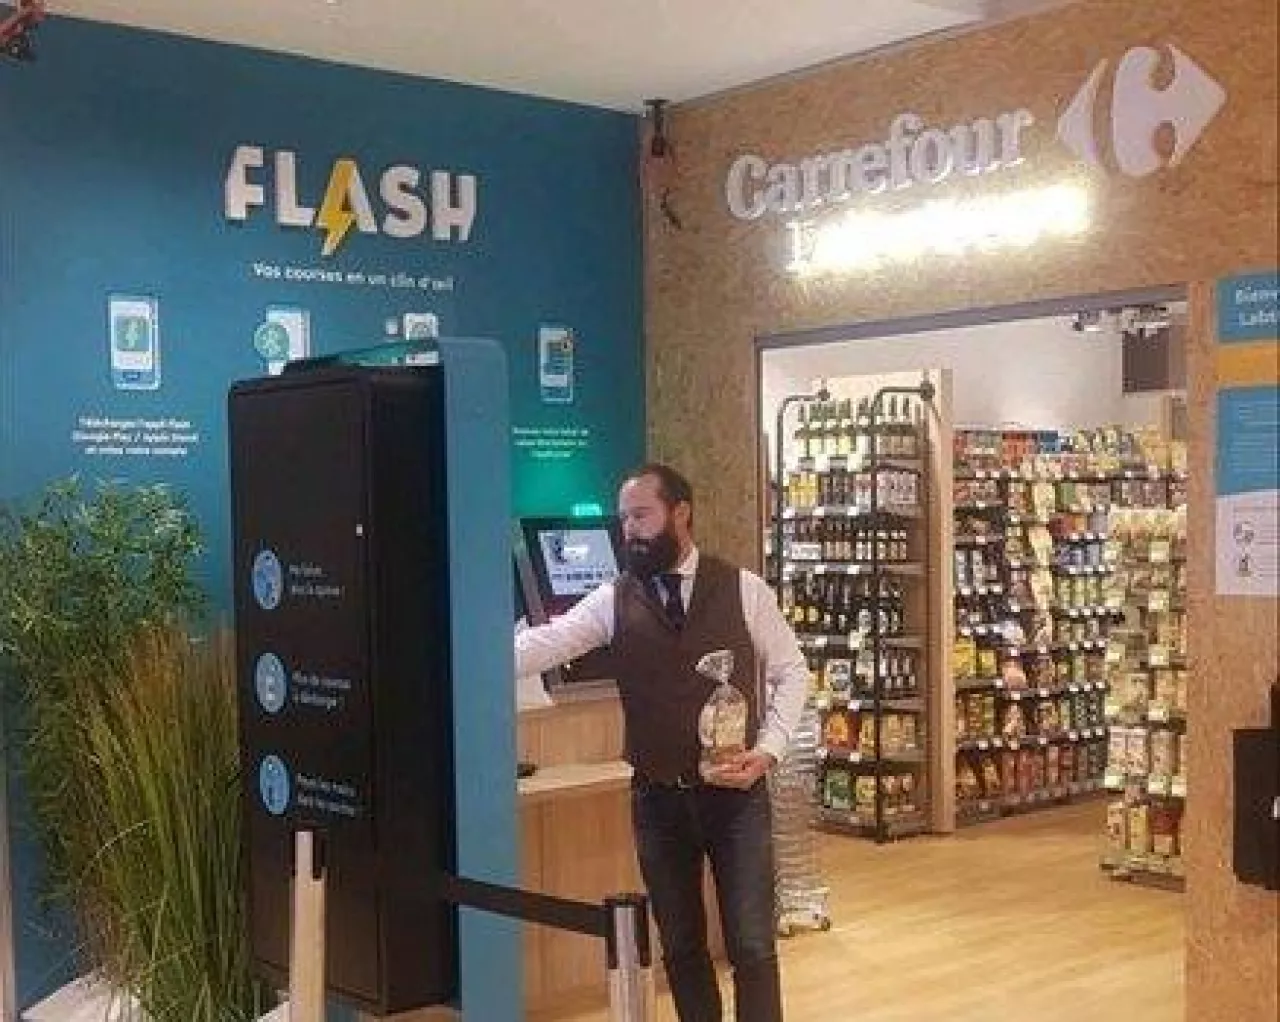 Zdjęcie Carrefour Flash opublikowane w mediach społecznościowych (fot. za: Linkedin)